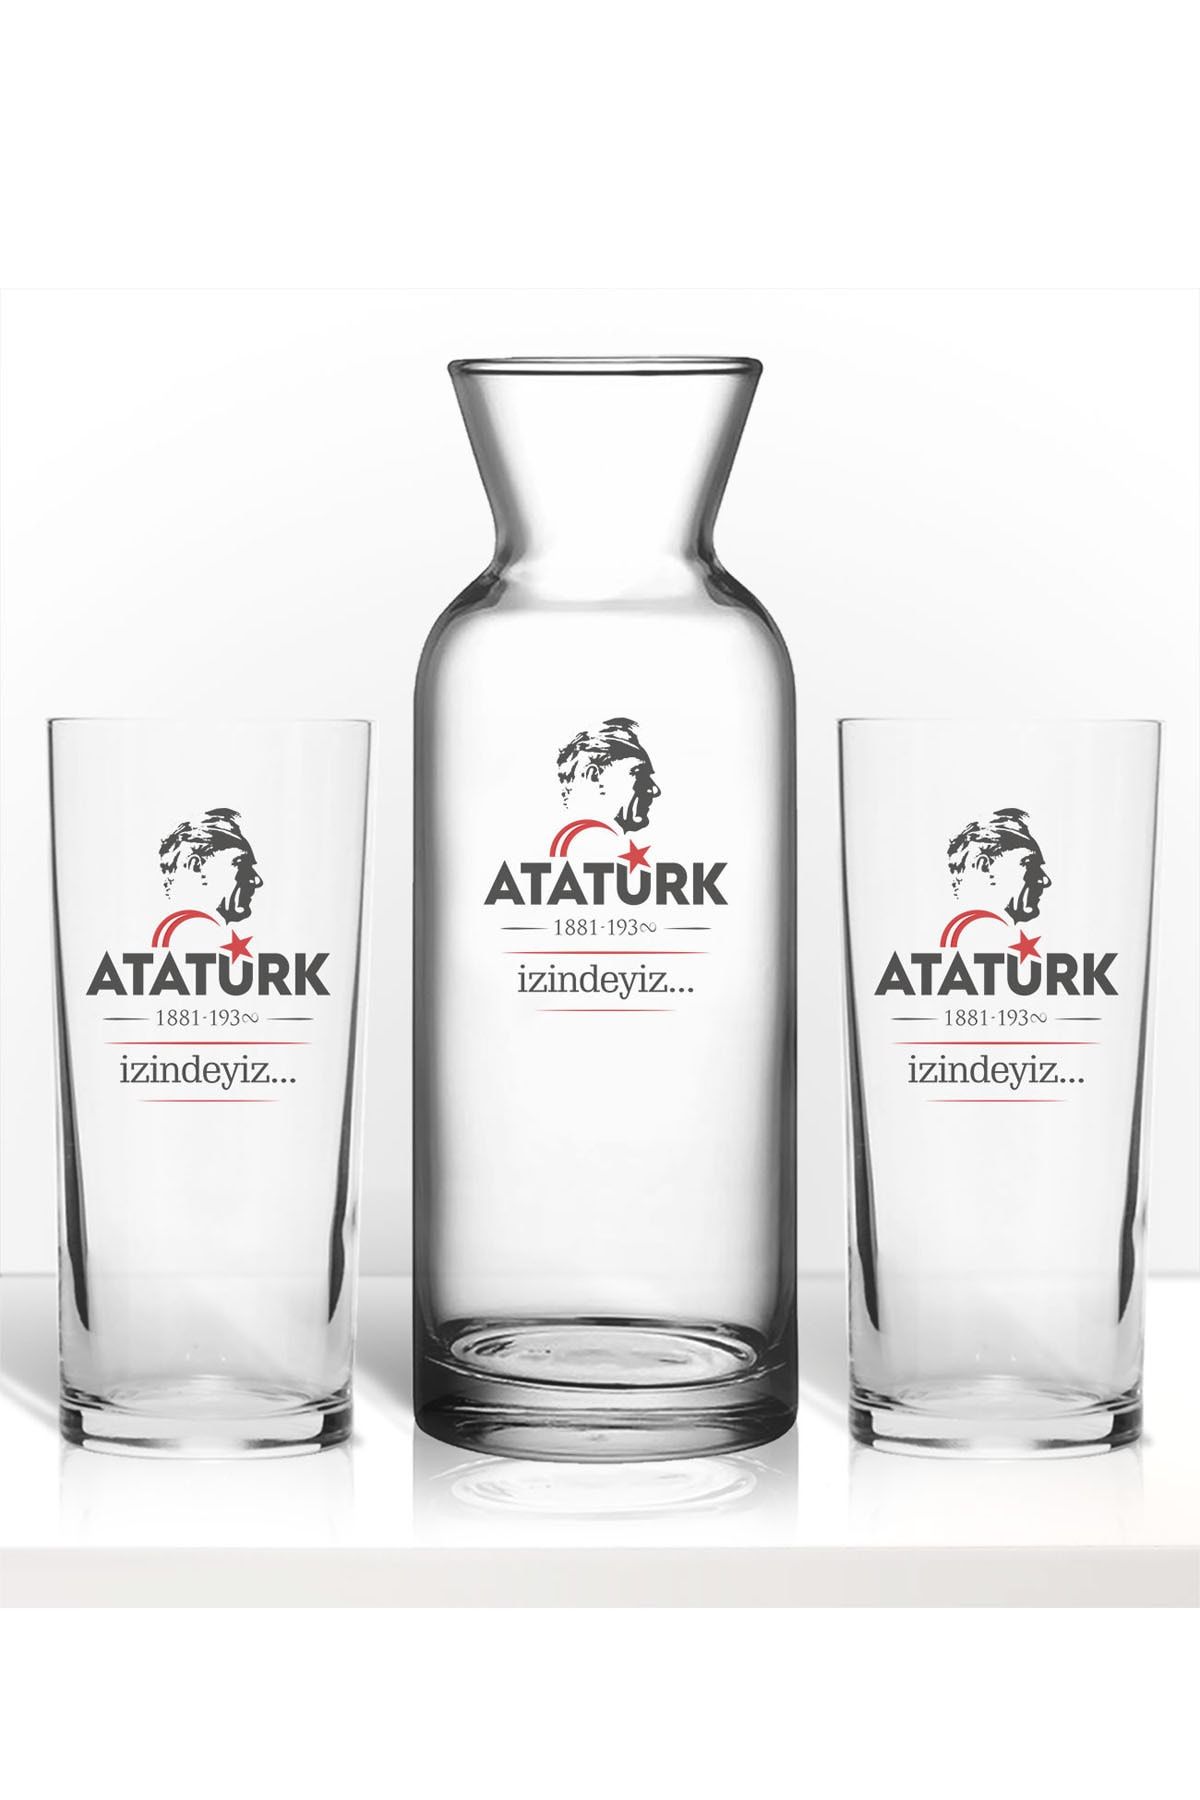 hediyecitr Atatürk Temalırenkli Baskılı Ikili Rakı Bardağı Karaf Kadeh Set